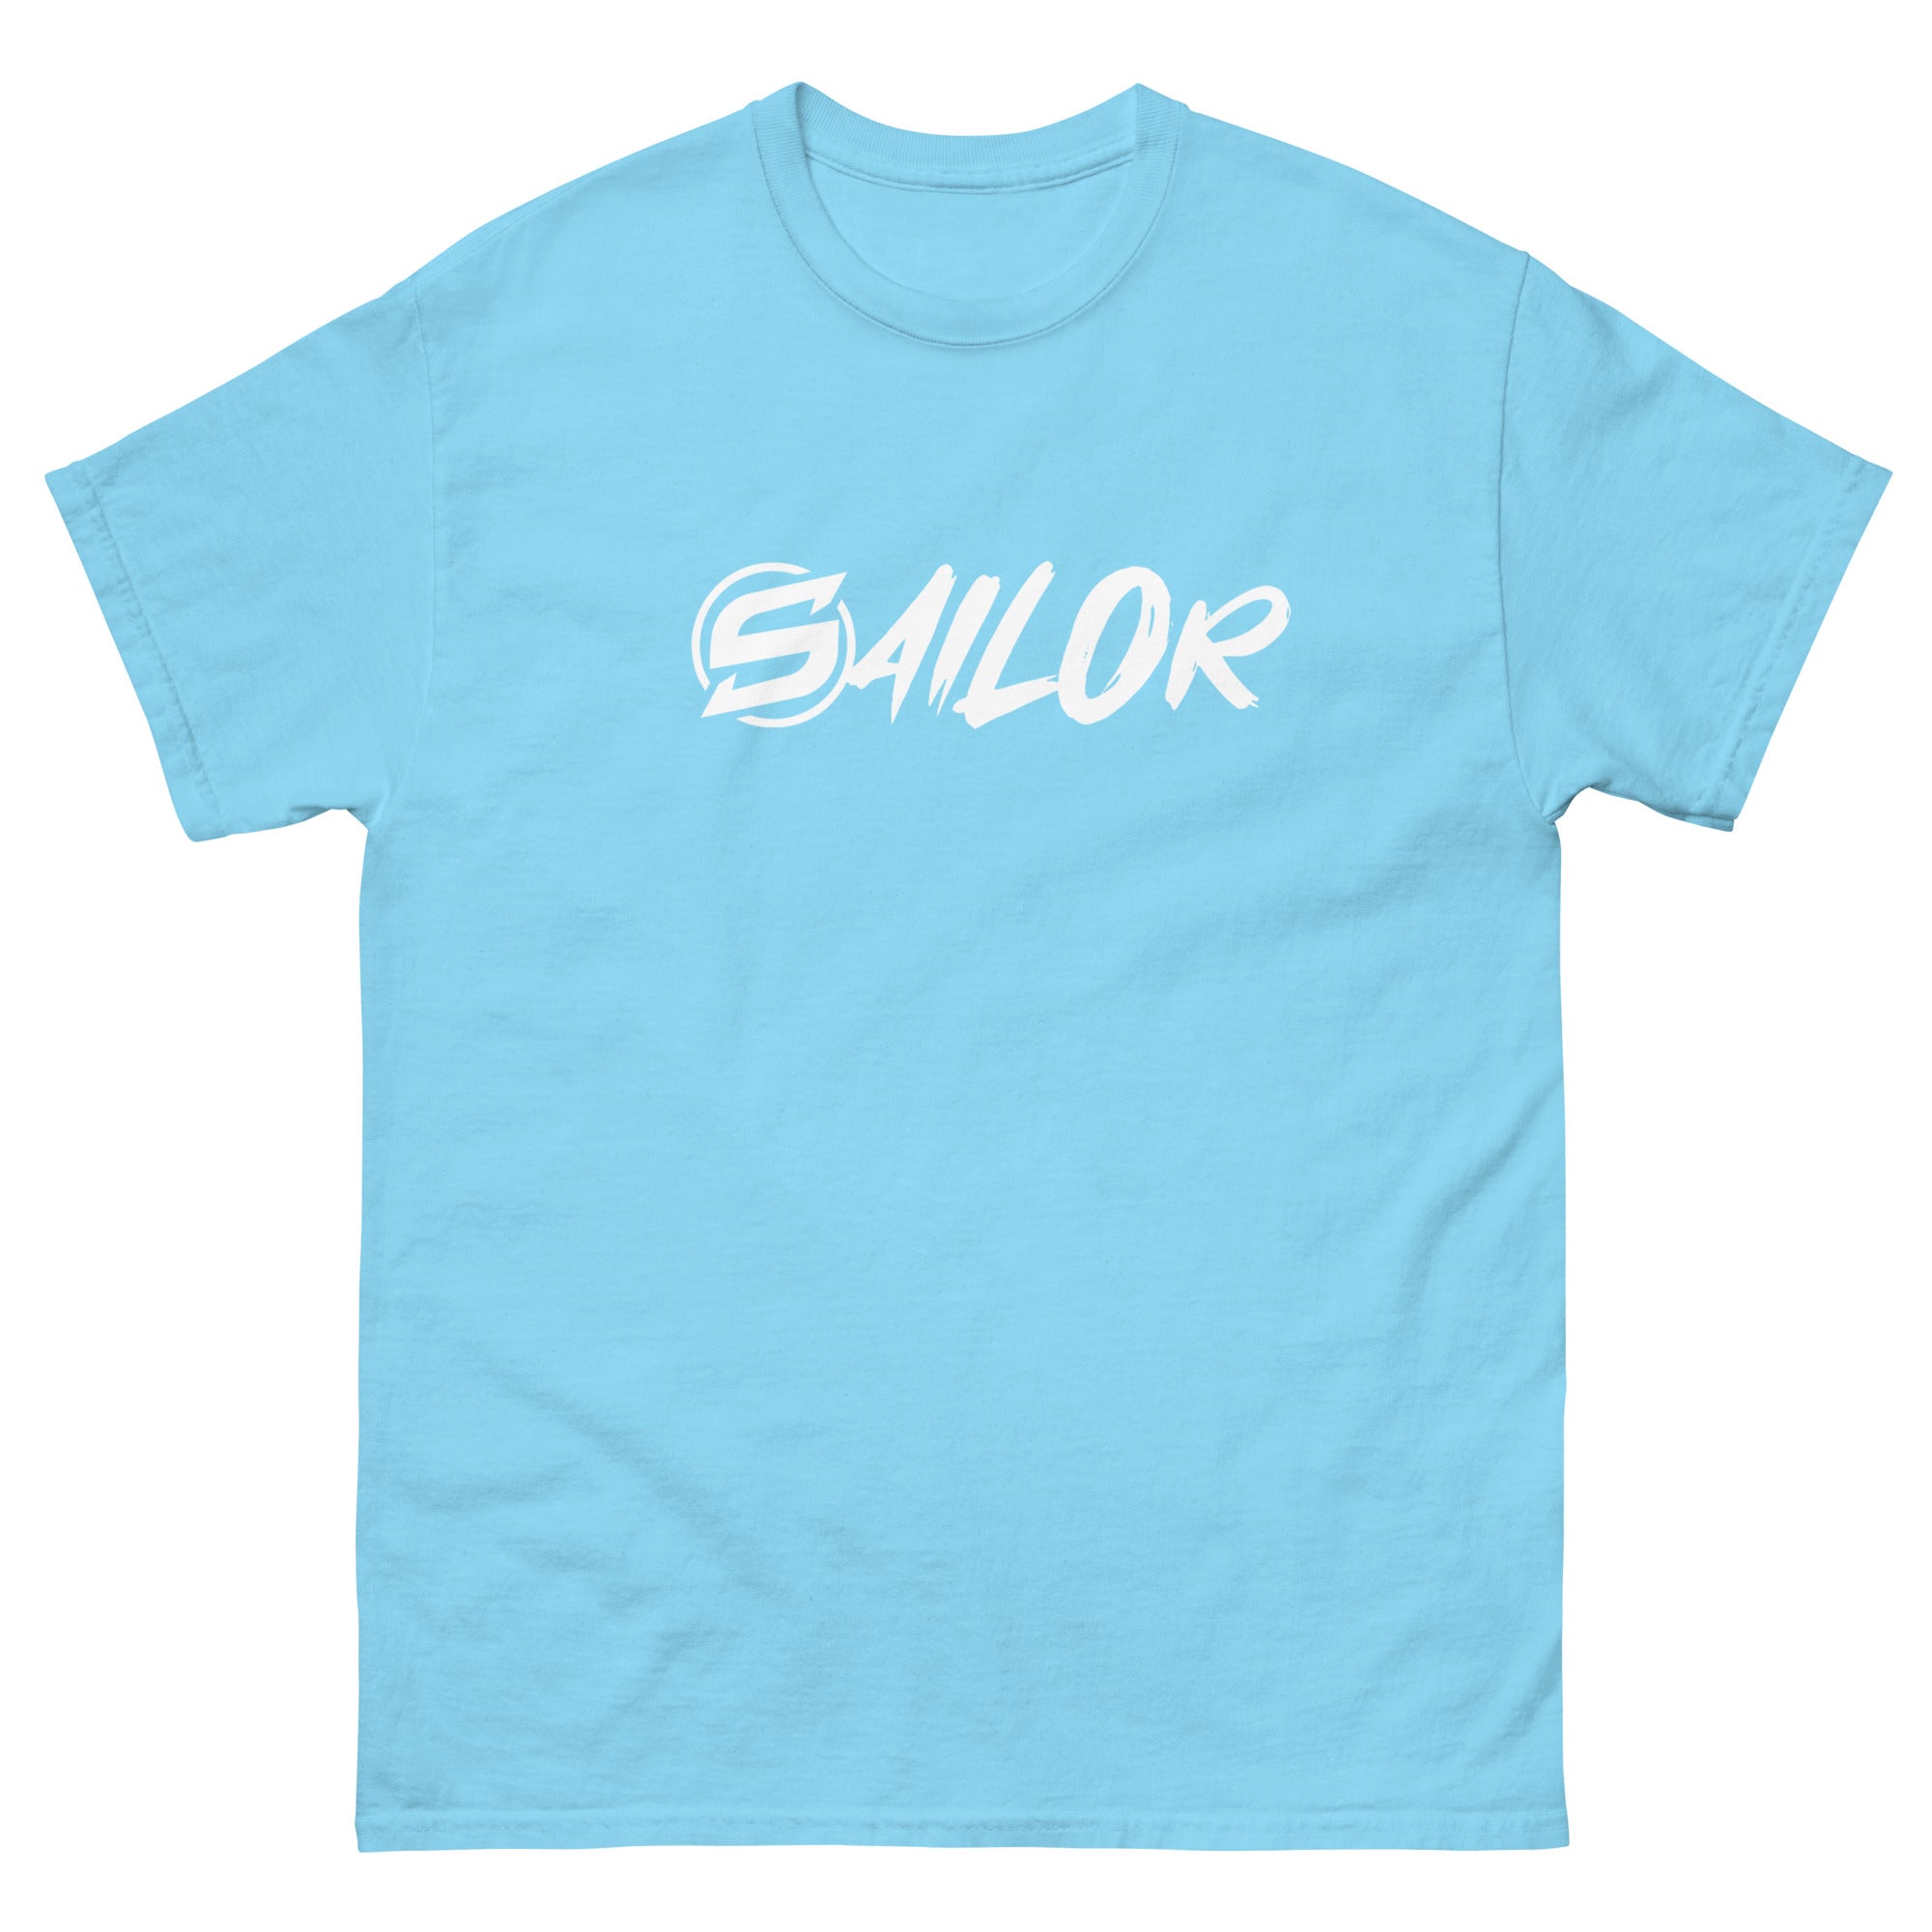 Sailor Big Print Shirt